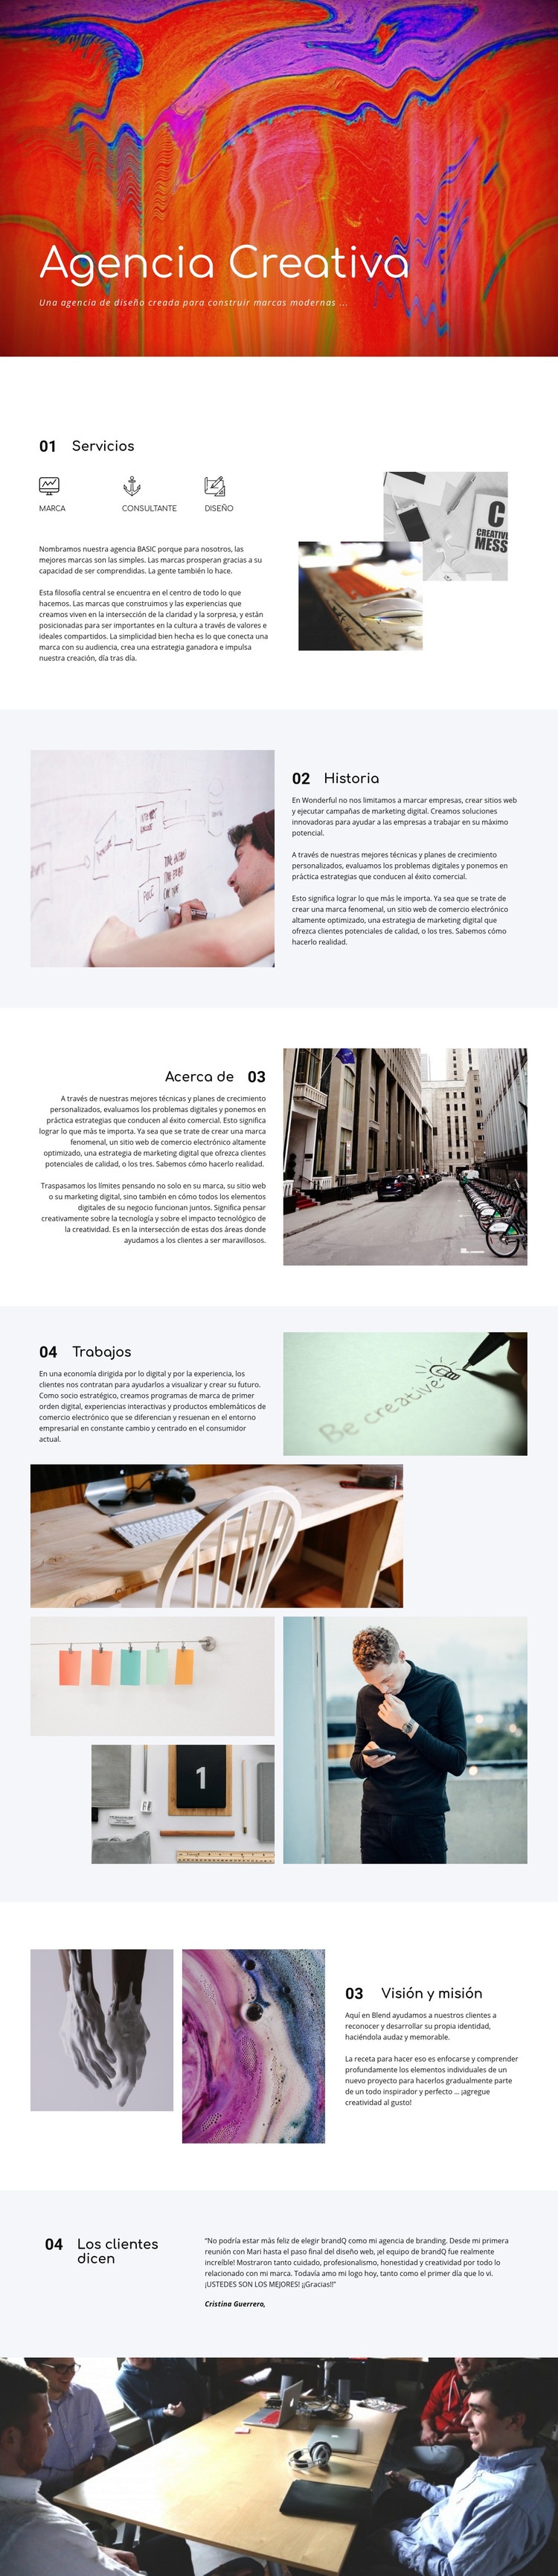 Galería creativa Diseño de páginas web